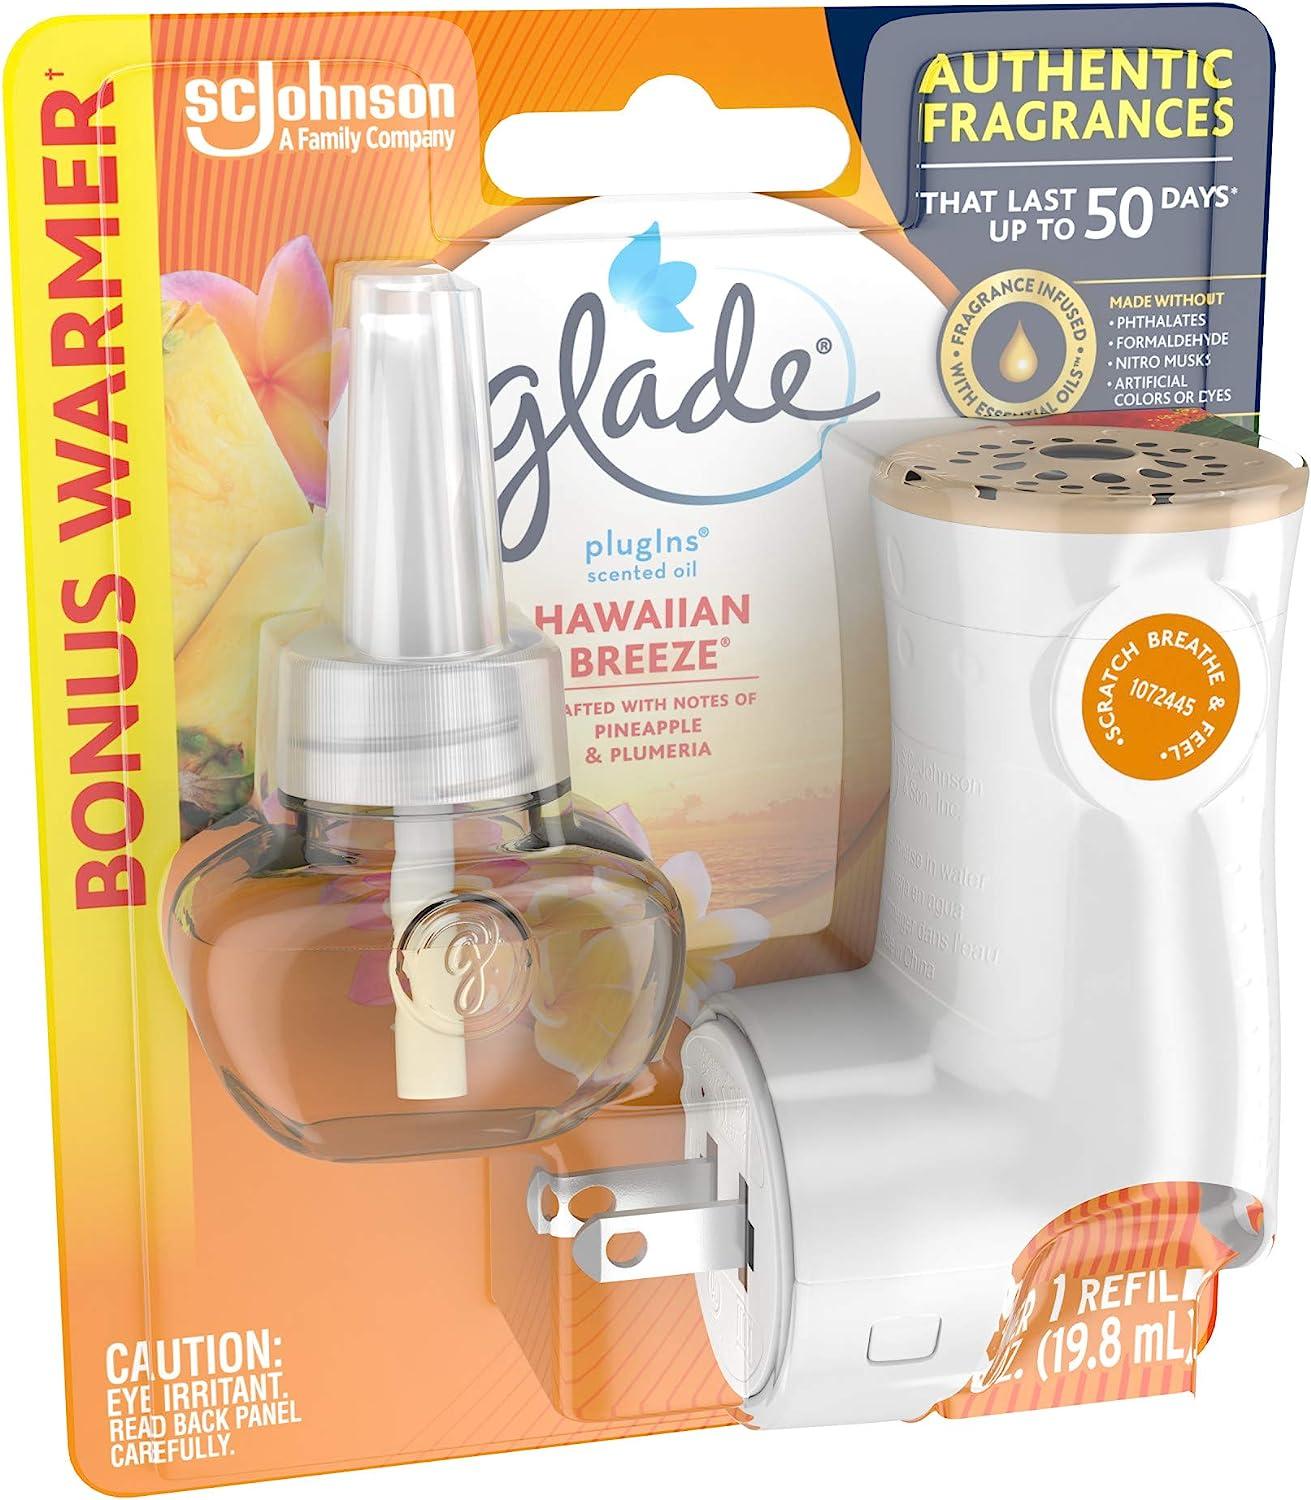 Glade PlugIns Refills Air Freshener Starter Kit, Scented Oil for